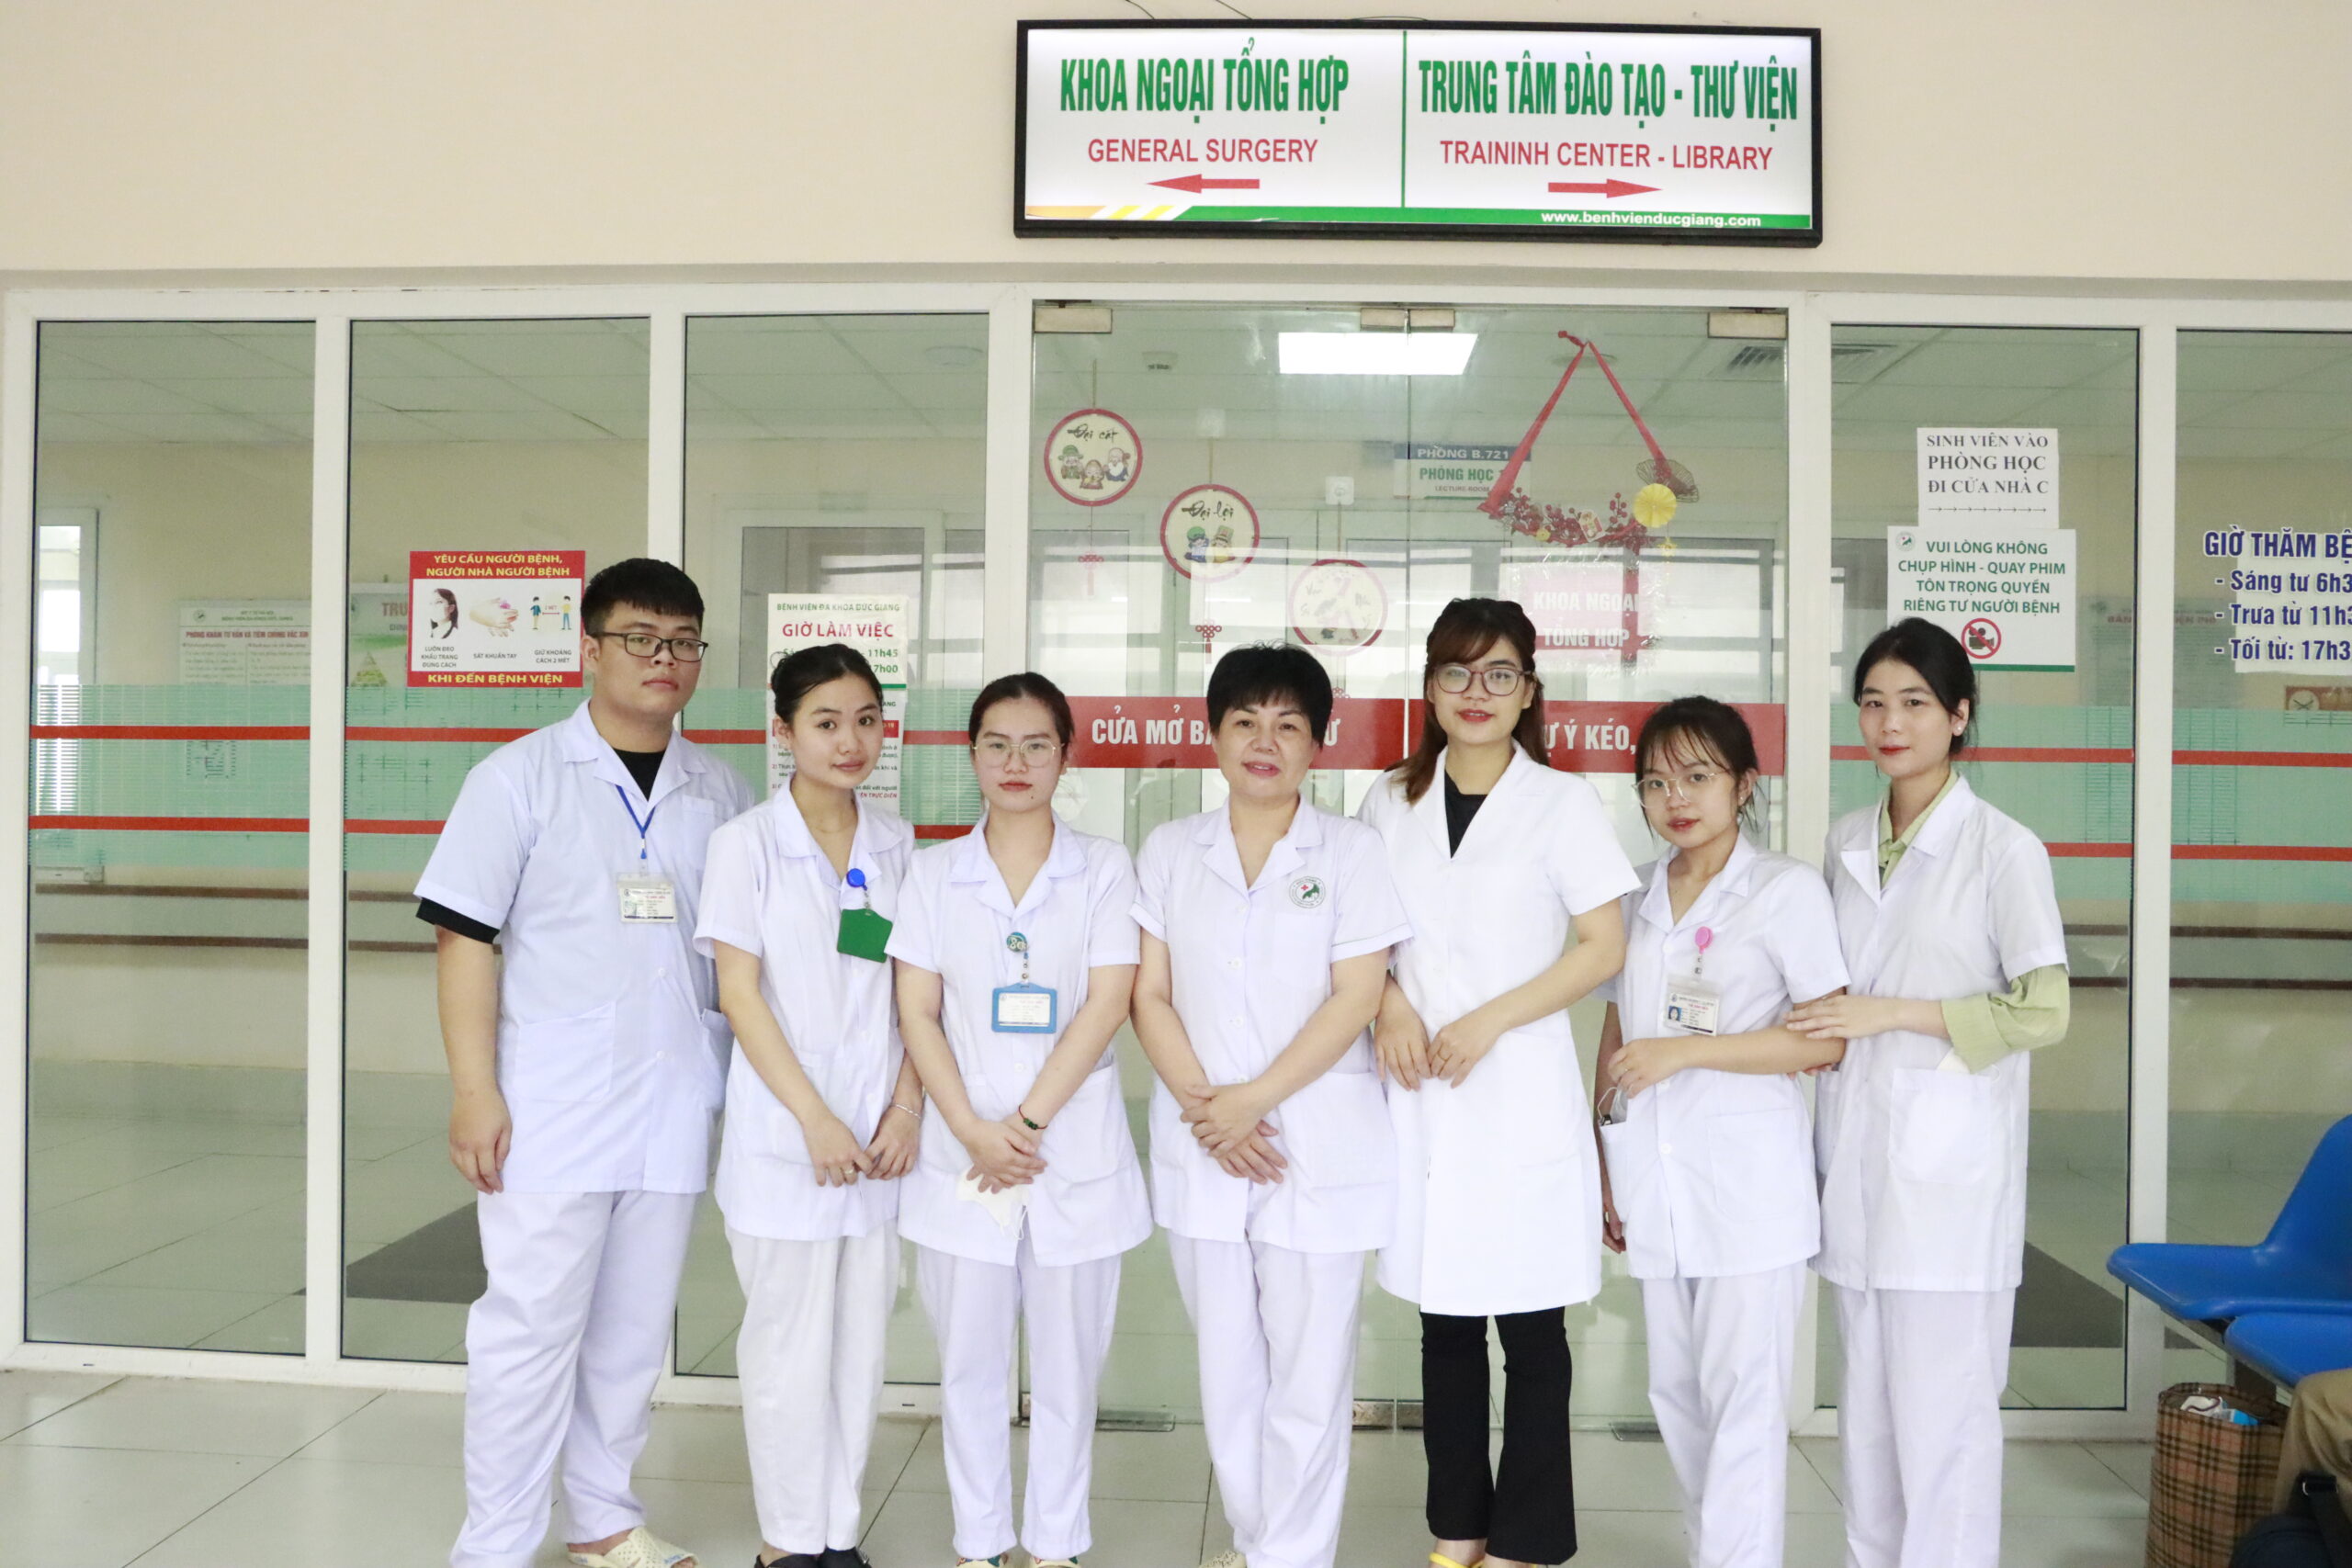 Bệnh viện Đa khoa Đức Giang nơi “Chuẩn bị hành trang cho tương lai ngành Y – Dược”